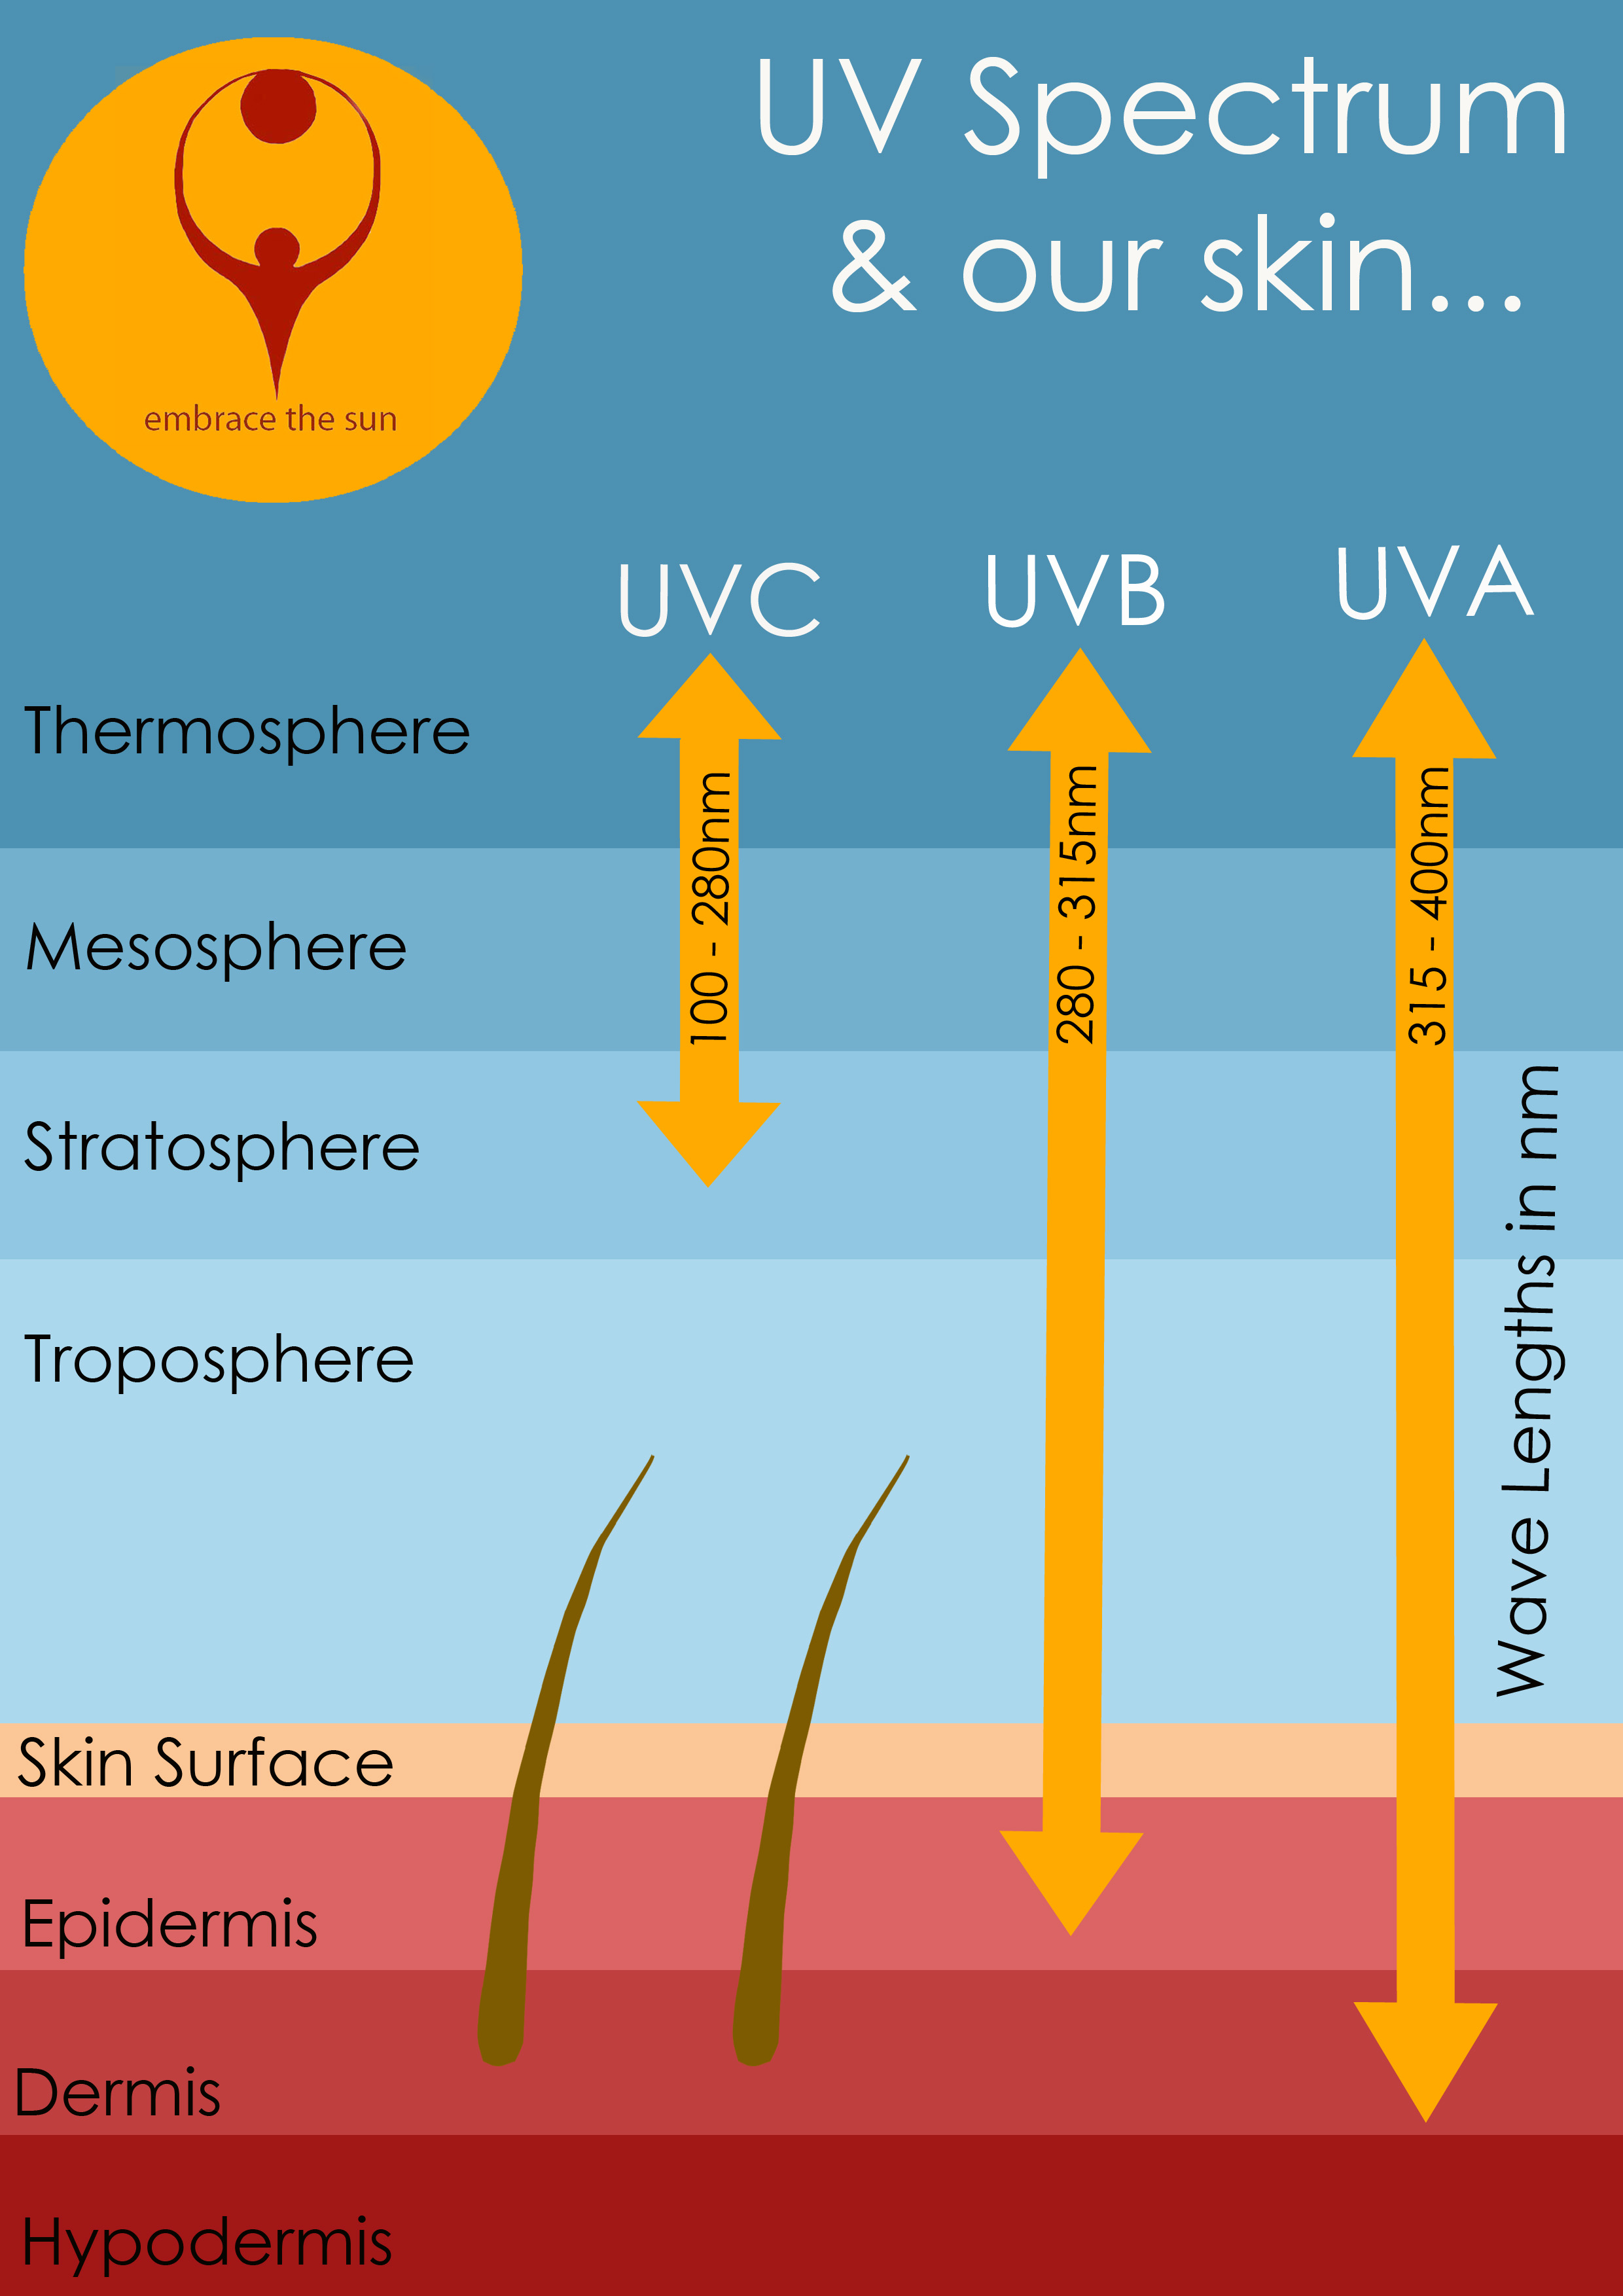 UVA rays